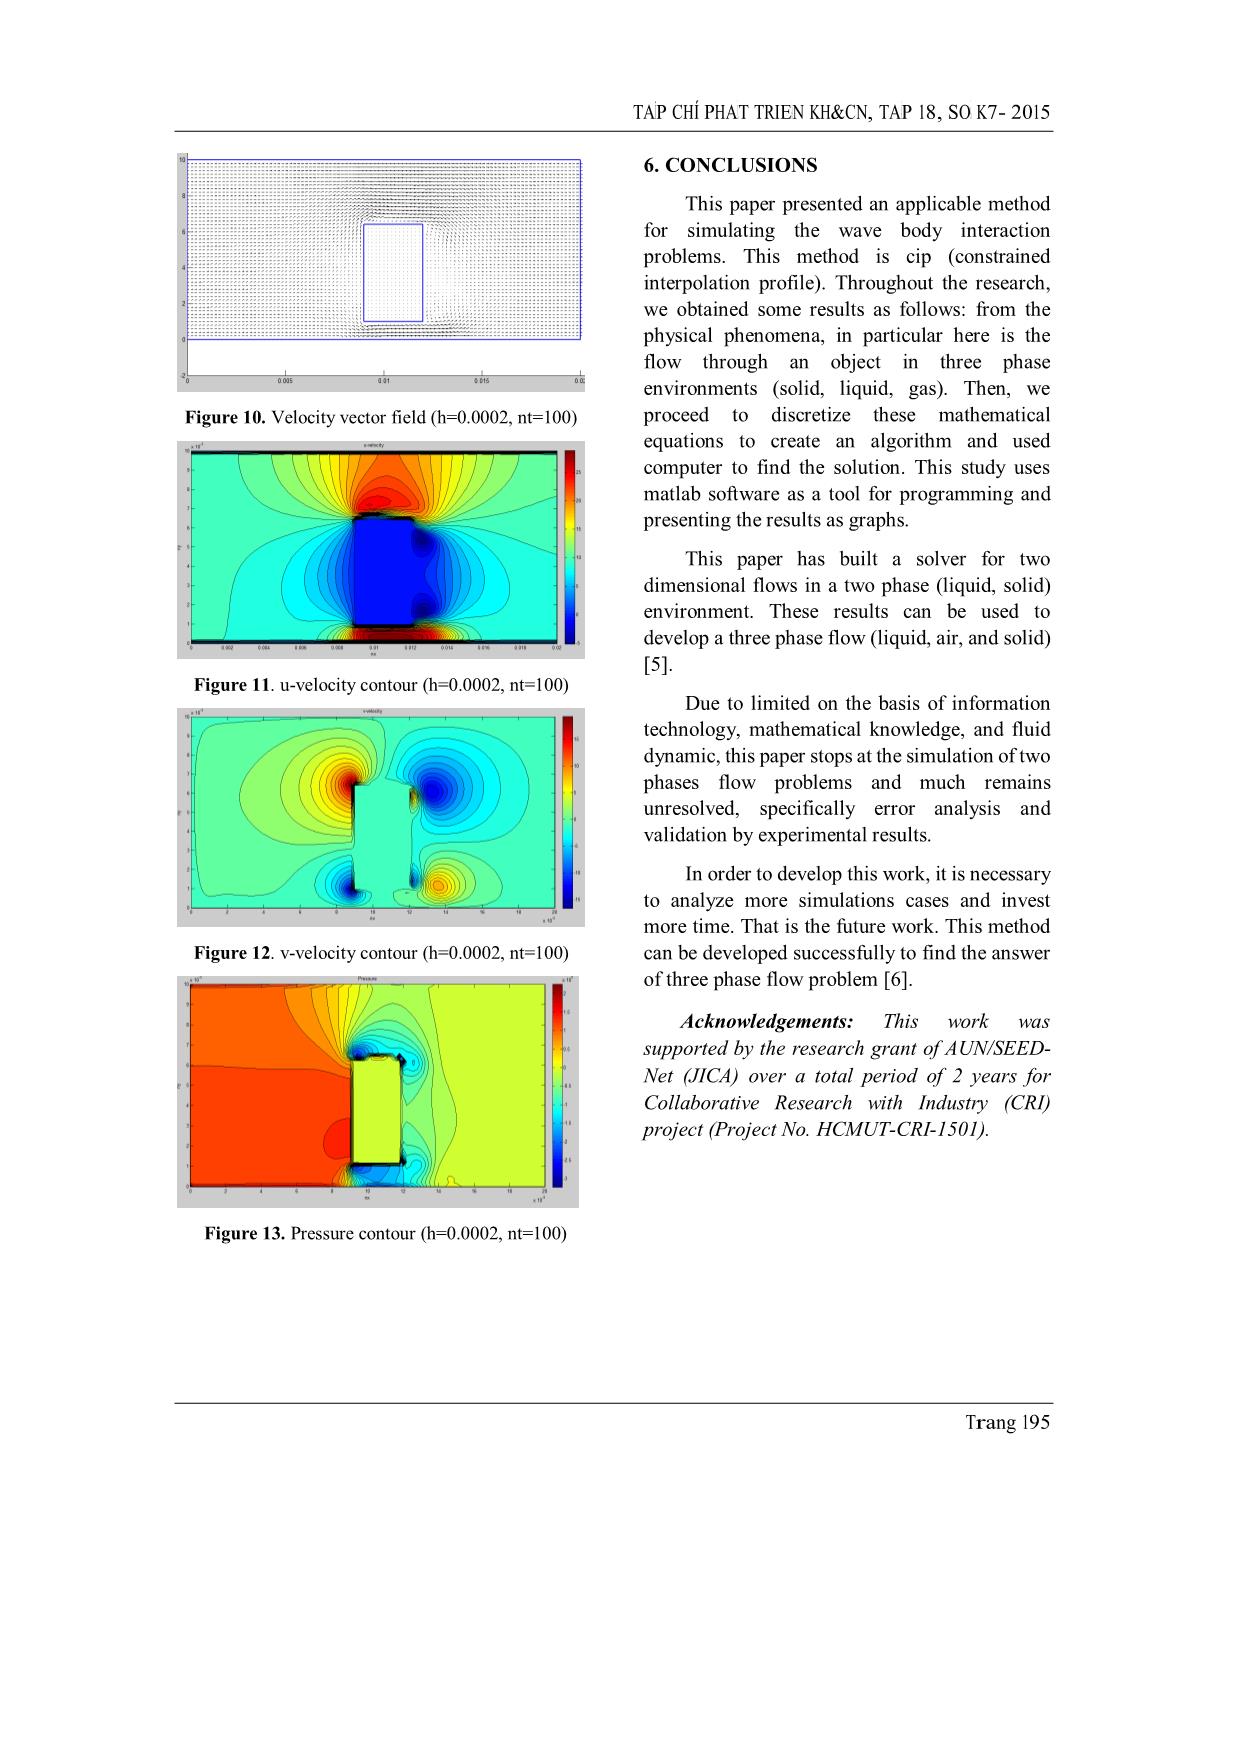 Thiết kế và lắp đặt hệ thống đo dao dộng rung trong hầm gió trang 8